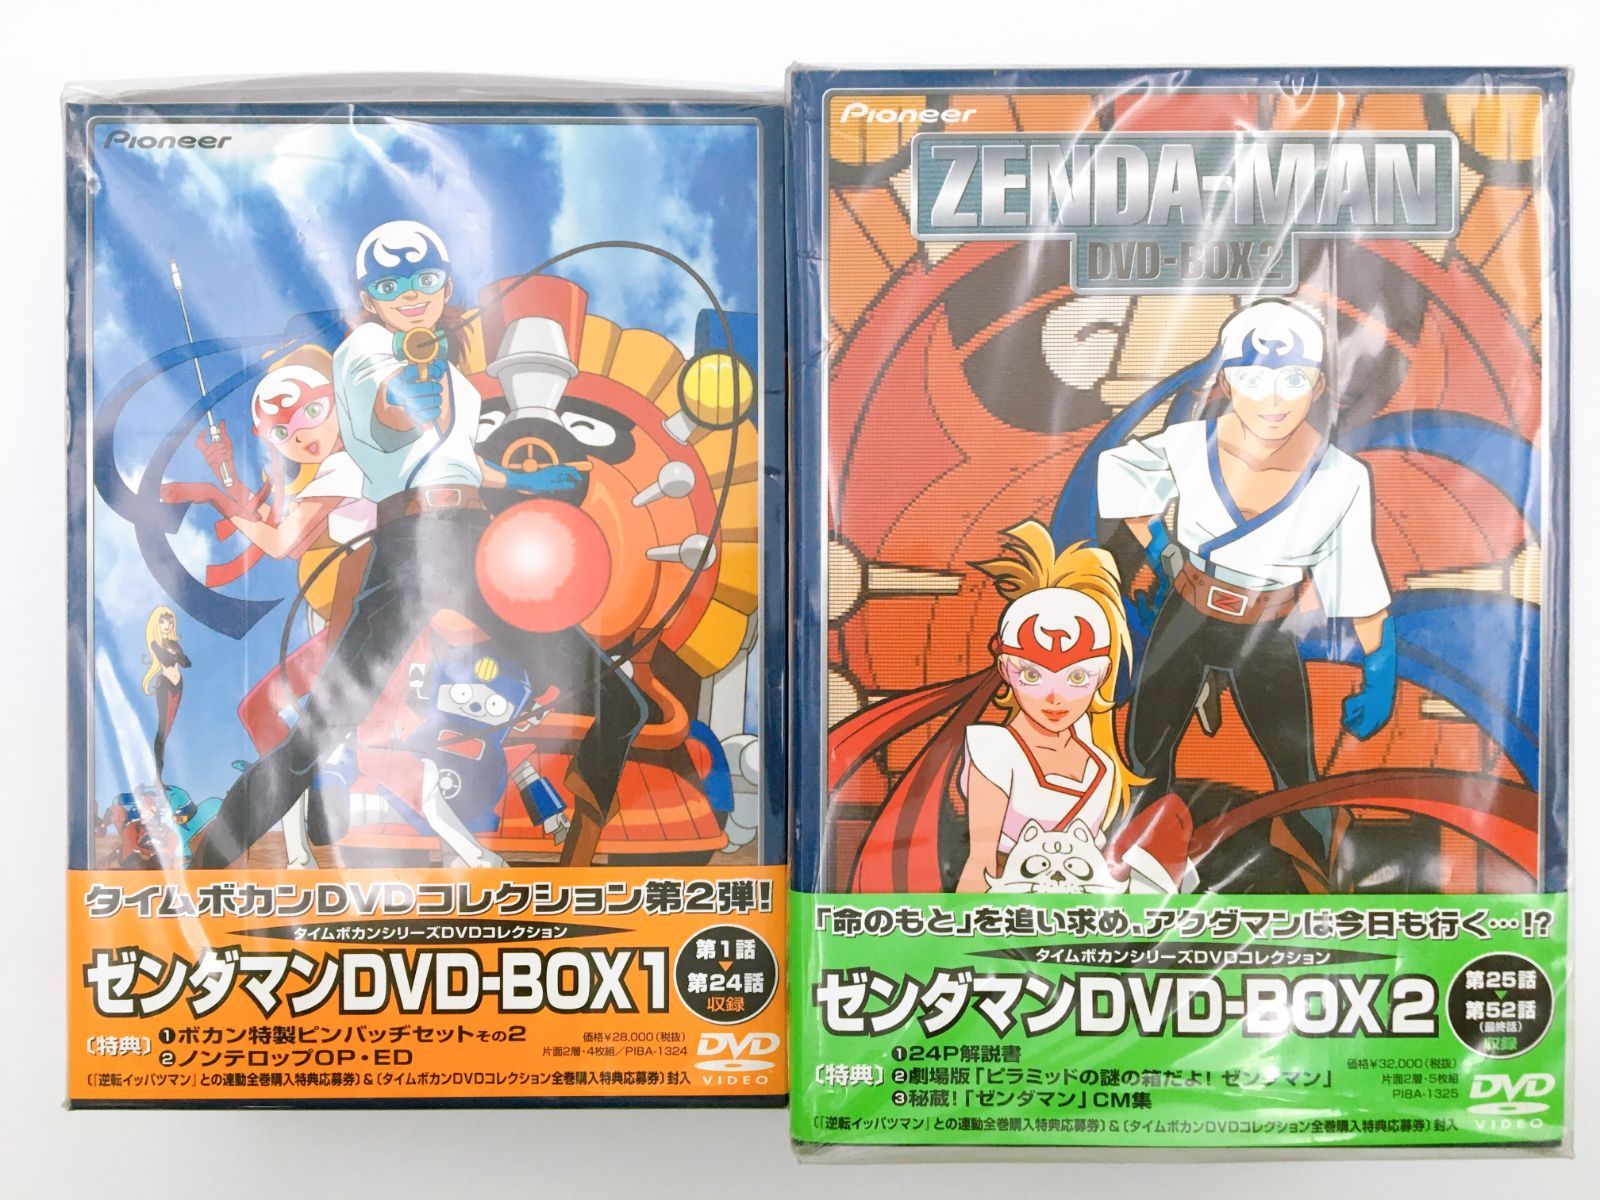 ゼンダマン DVD BOX 2